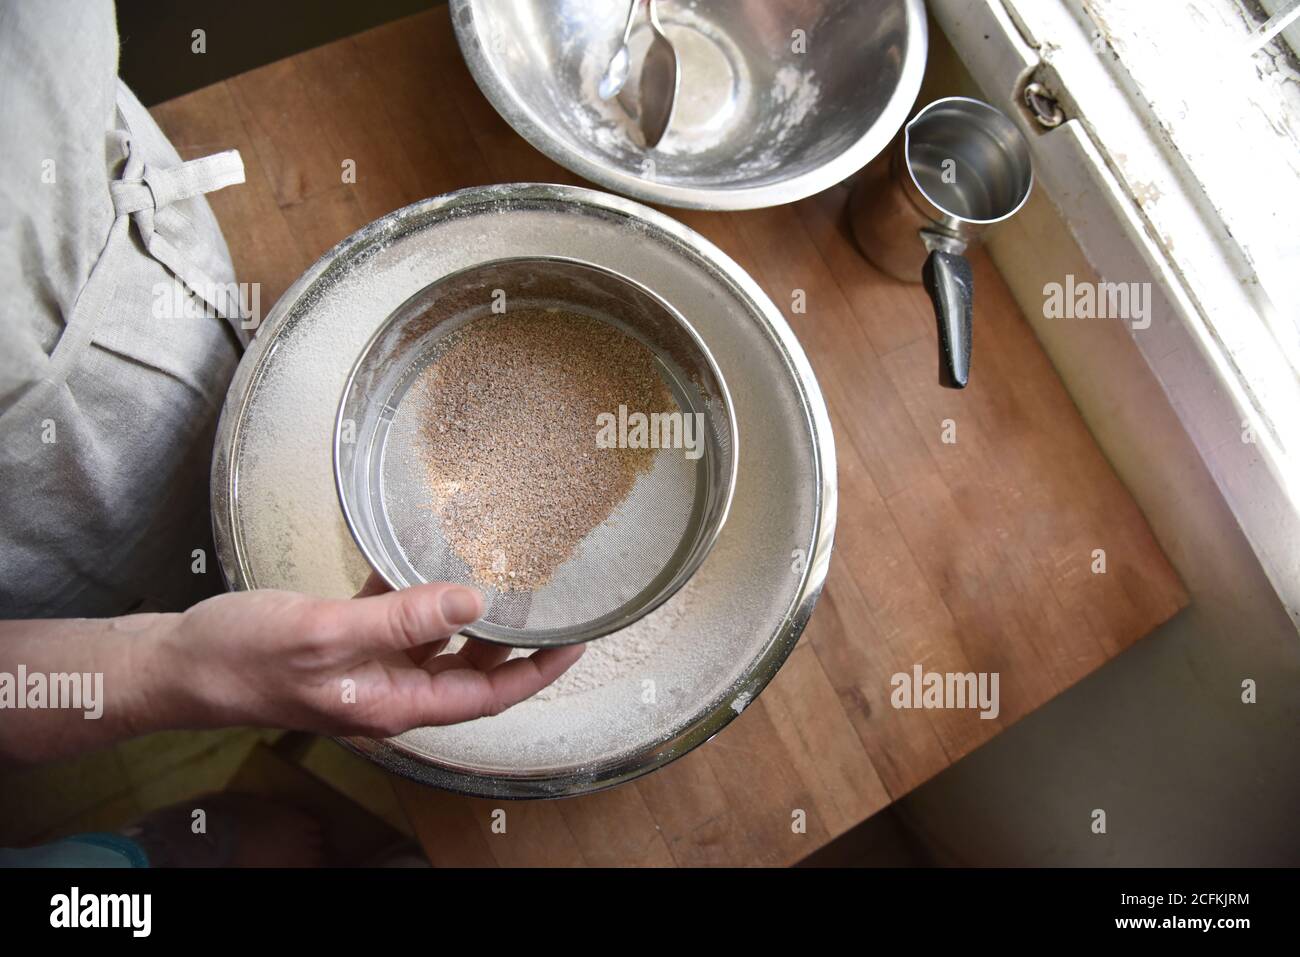 Una femmina cuoce in grembiule setola la farina in una ciotola di metallo. Preparazione per creare un impasto per la cottura. Patisserie fatta in casa. Foto di alta qualità Foto Stock